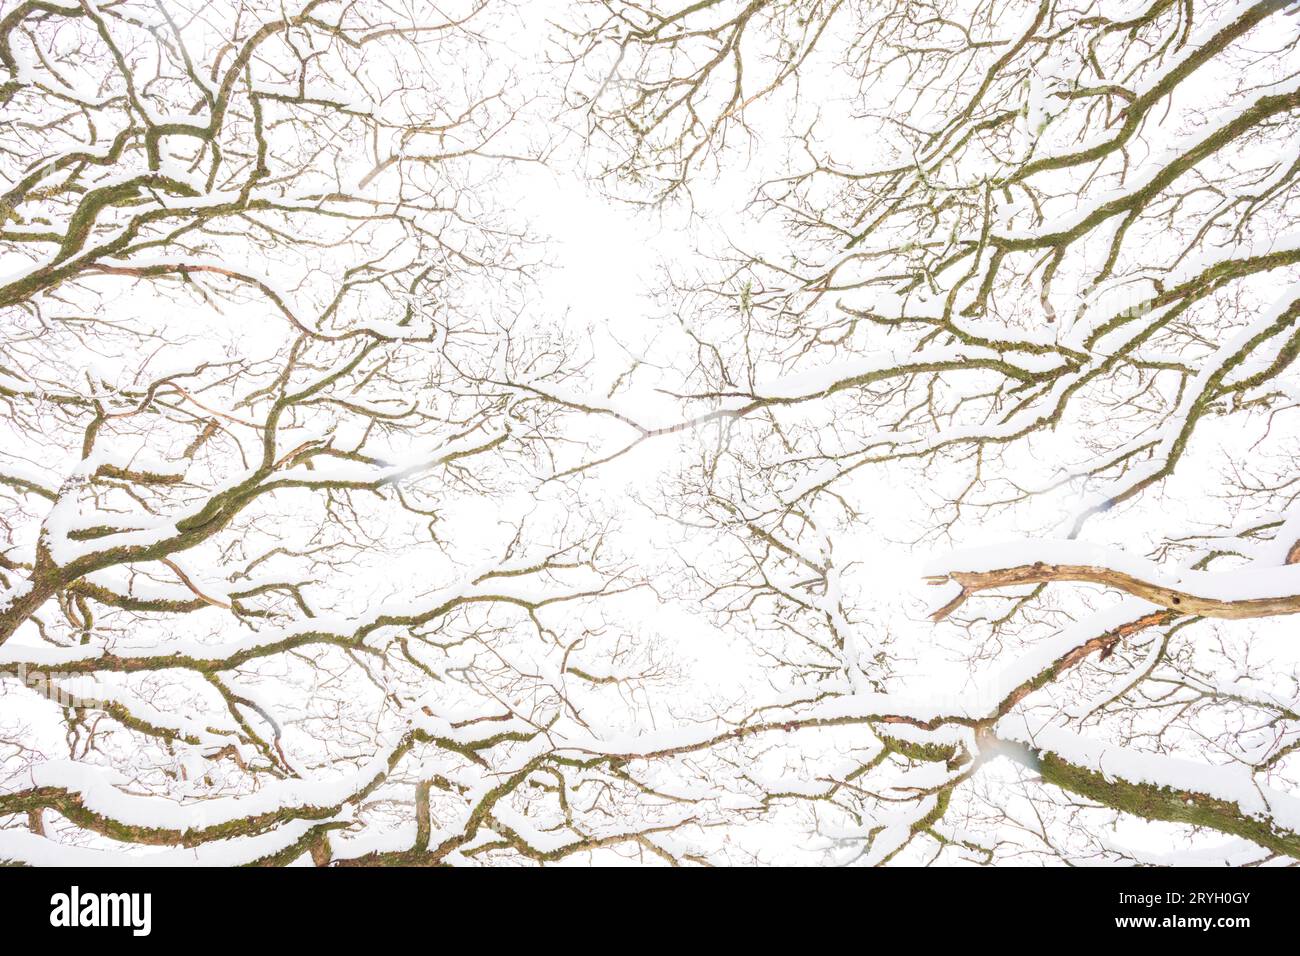 Motifs de branches de chênes sessiles dans les bois après une chute de neige. Powys, pays de Galles. Mars. Banque D'Images